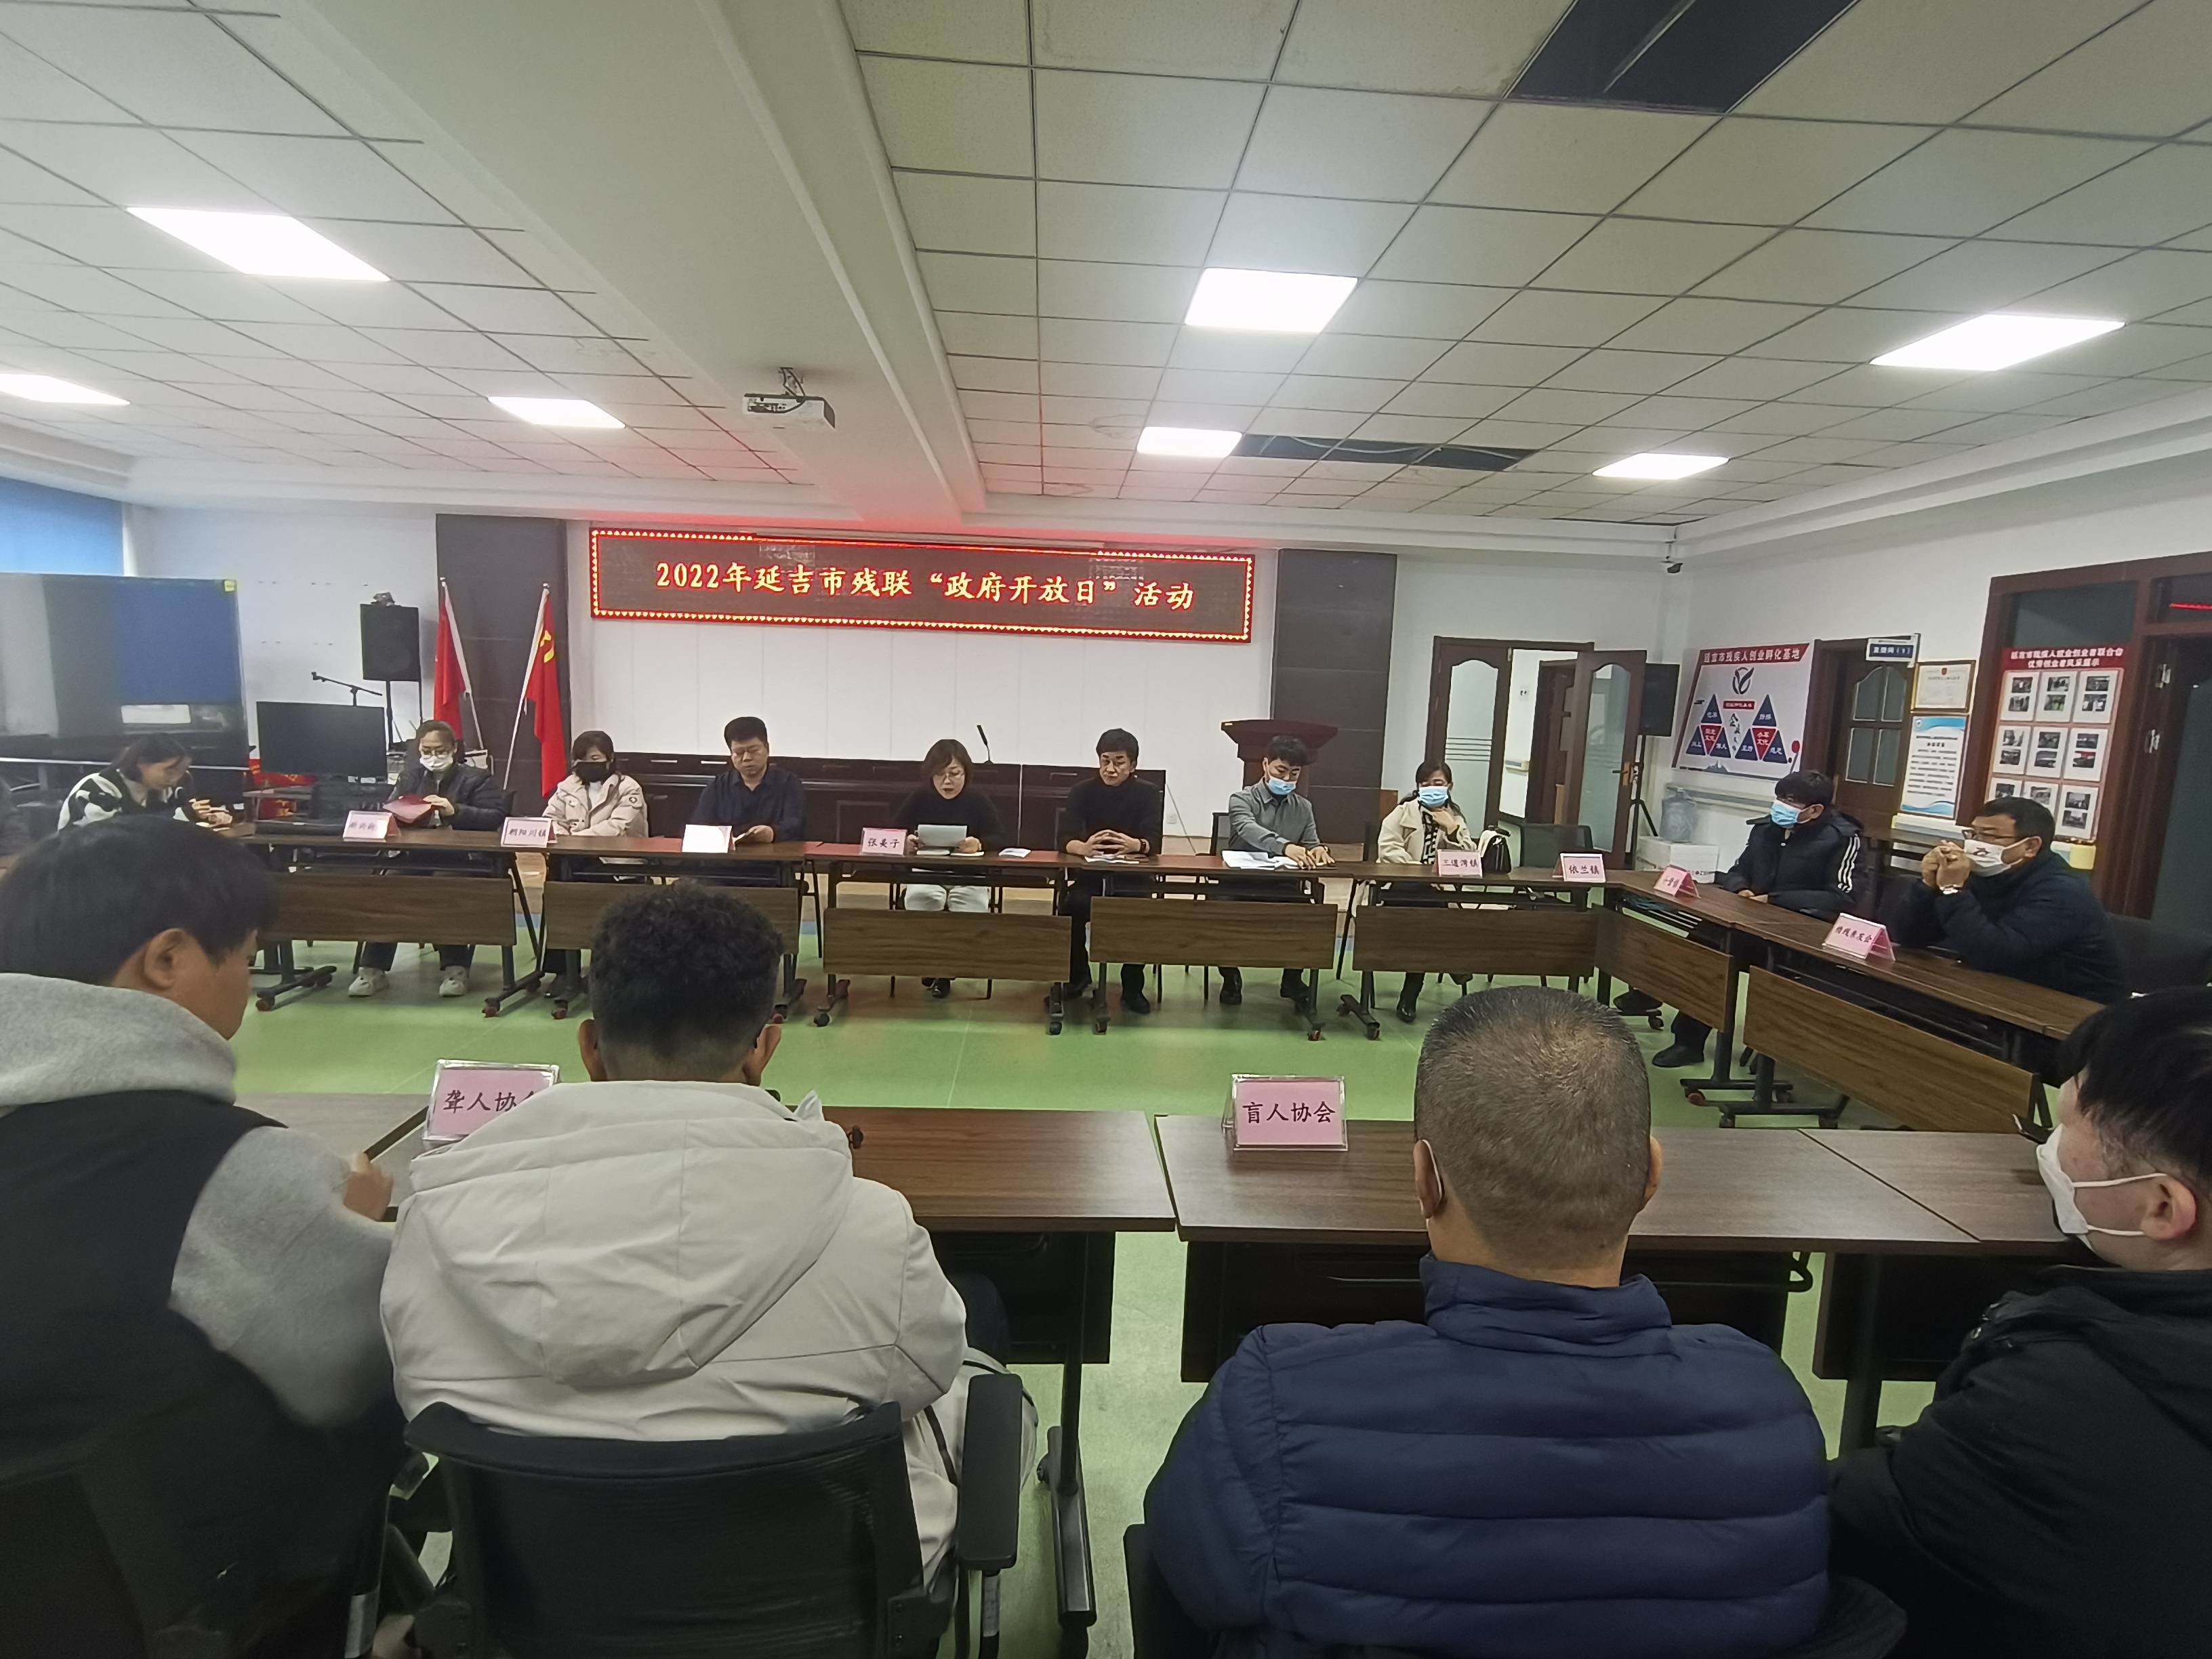 延吉市残联组织开展2022年政府开放日活动